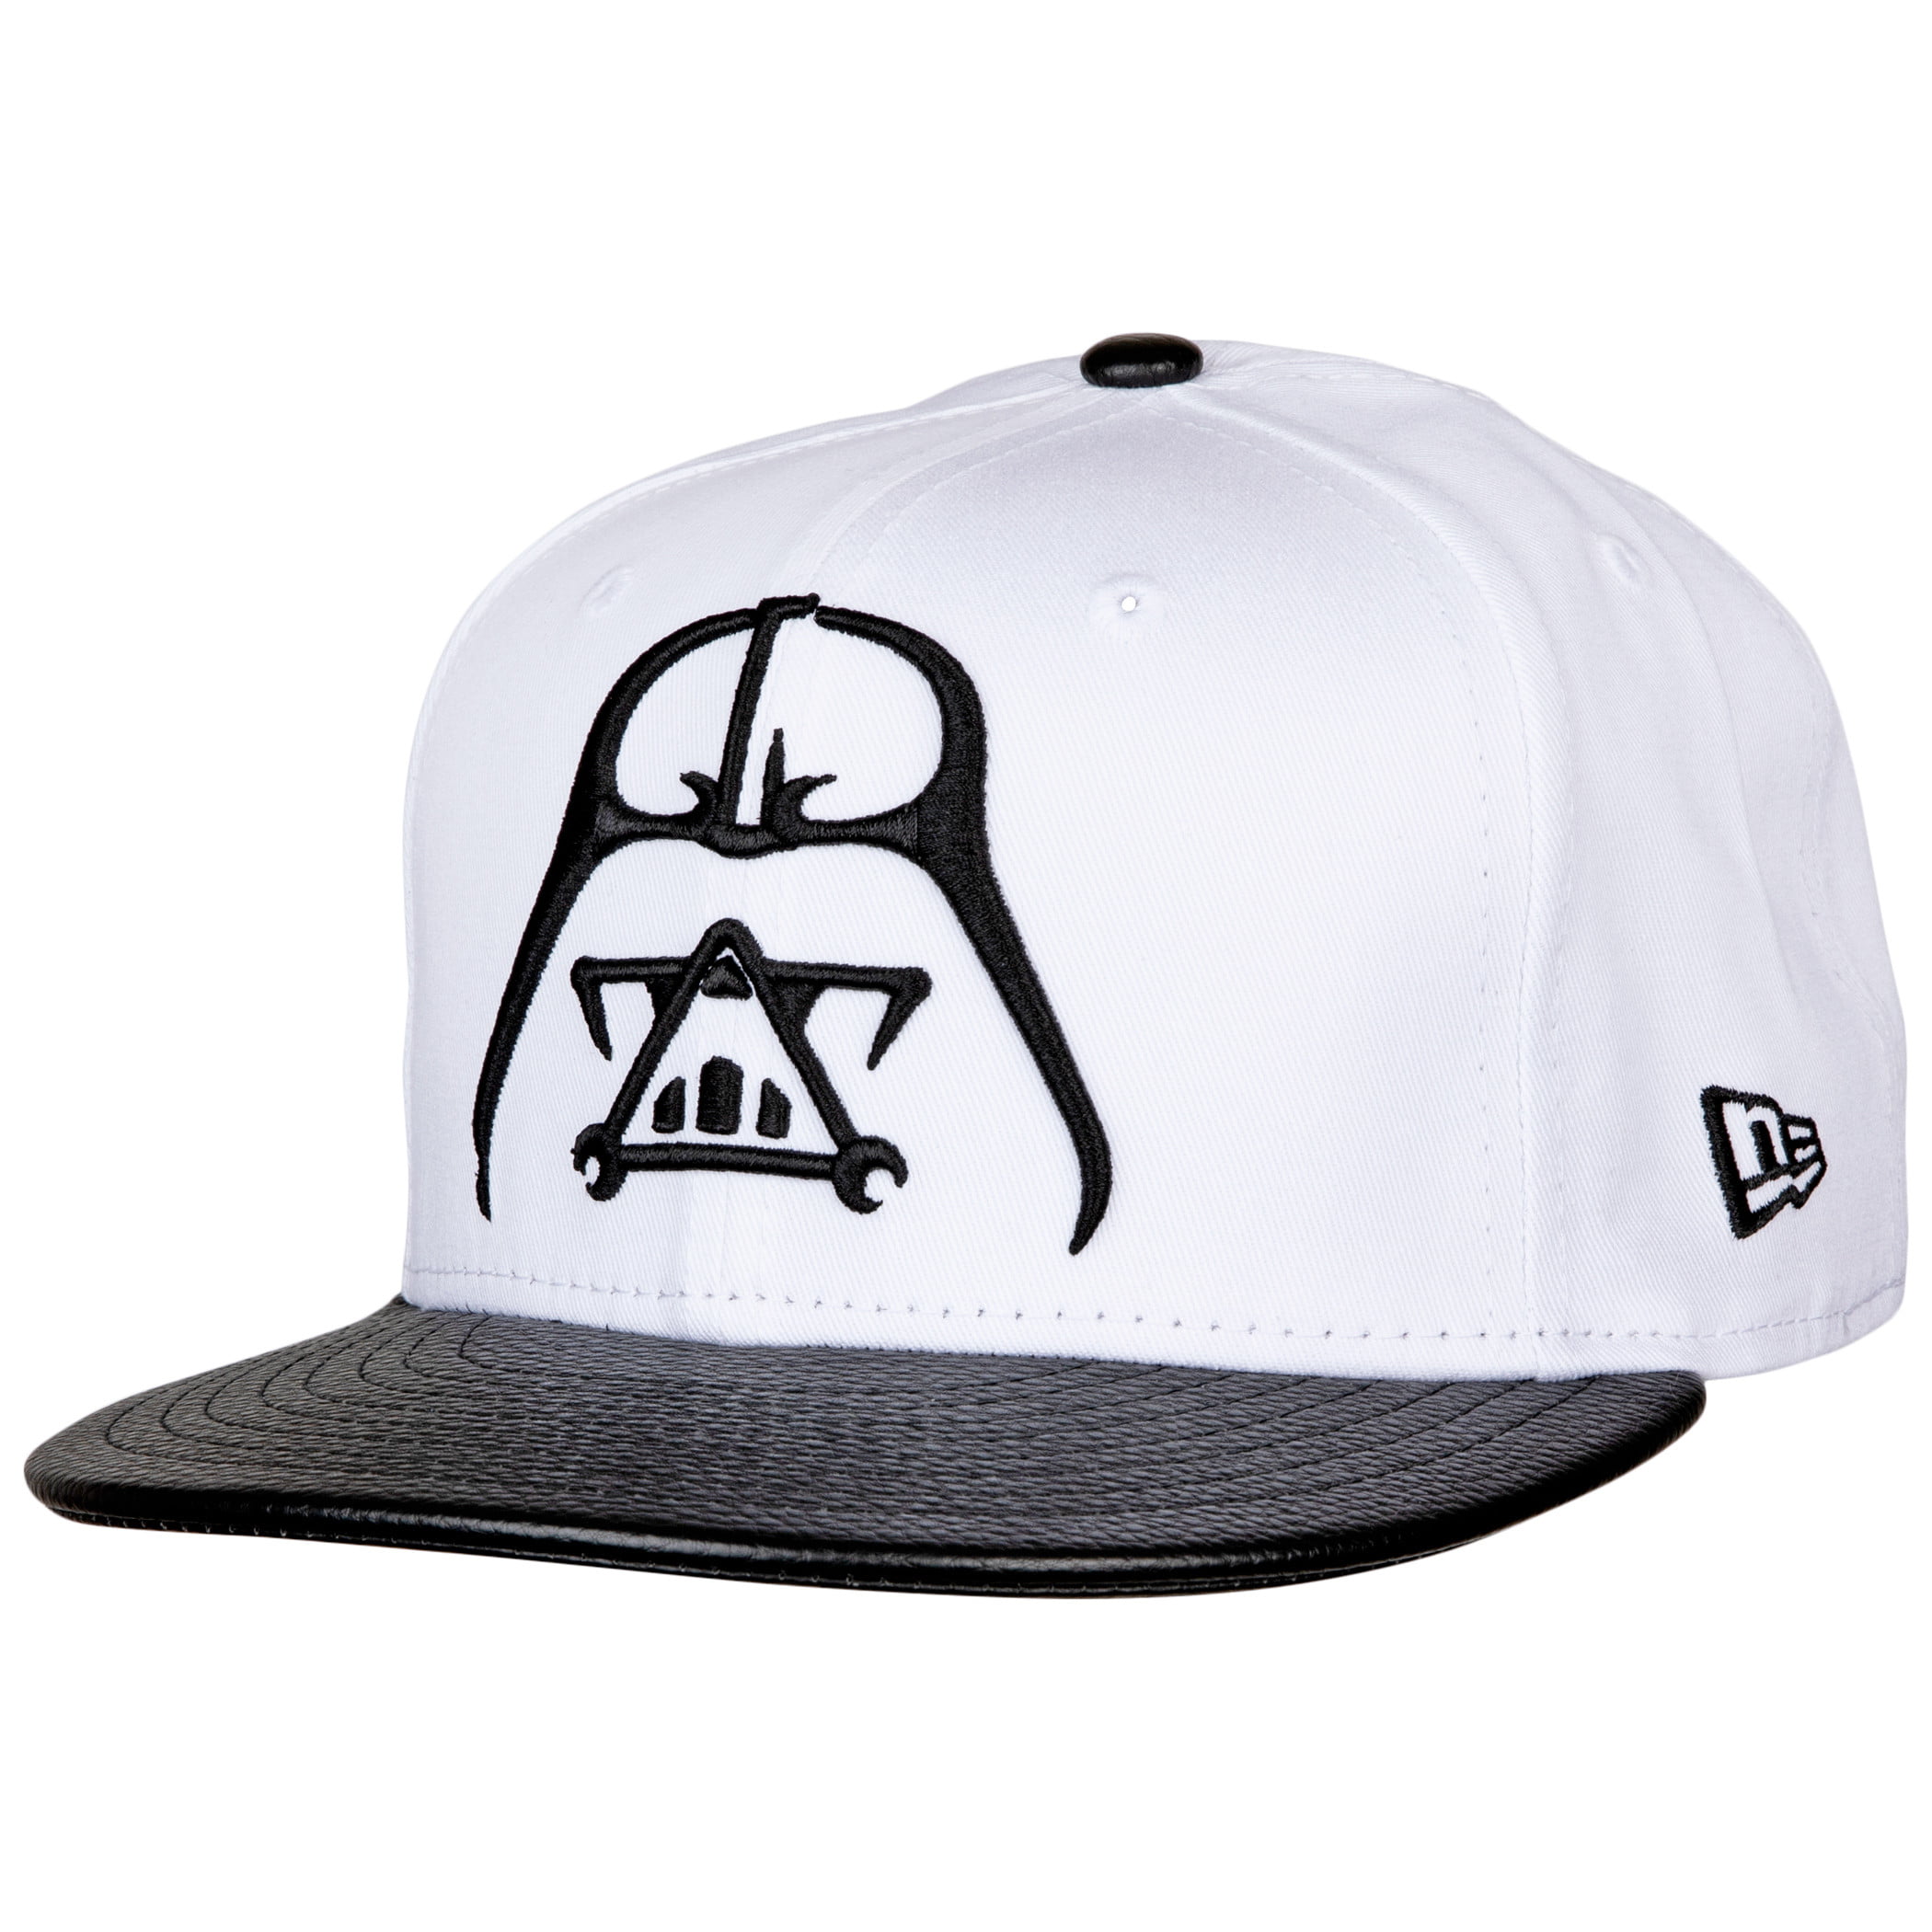 Details about   Star Wars Youth Adjustable "Vader Glow Lightsaber" Baseball Cap Hat E1 1061 